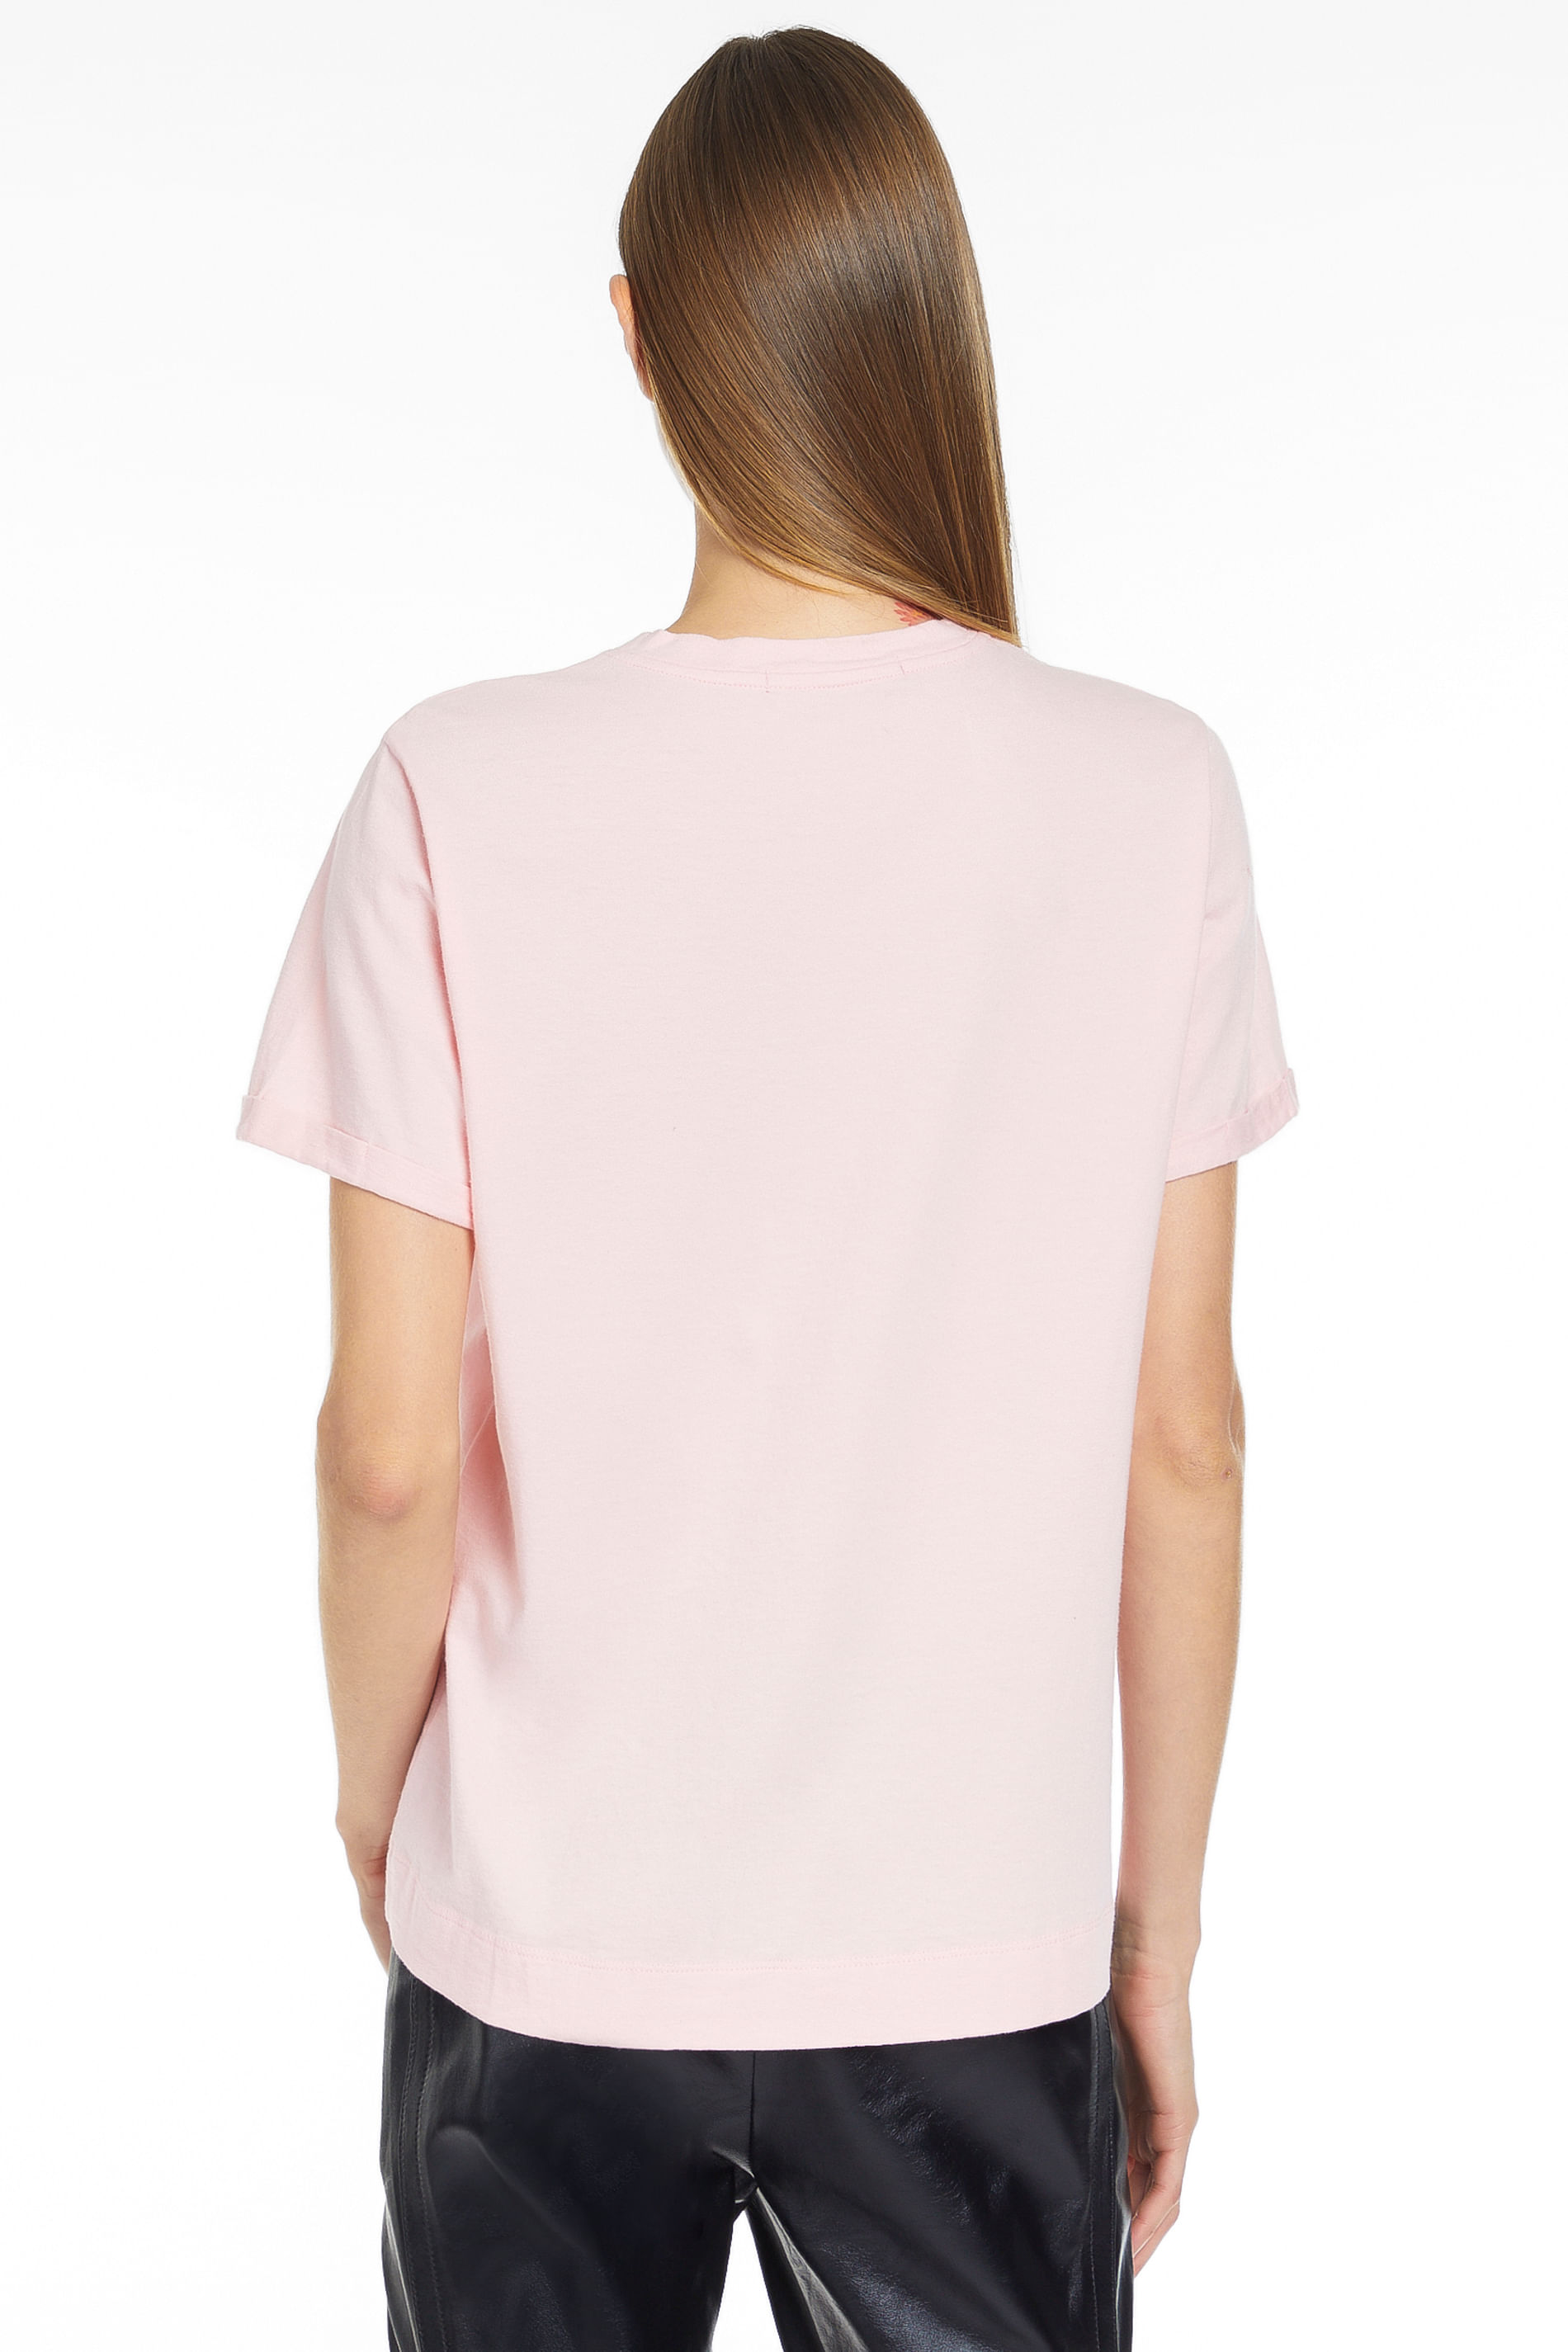 Mini Blusa ora Disponibile Online e in negozio!!! Fast Shipping! 💕